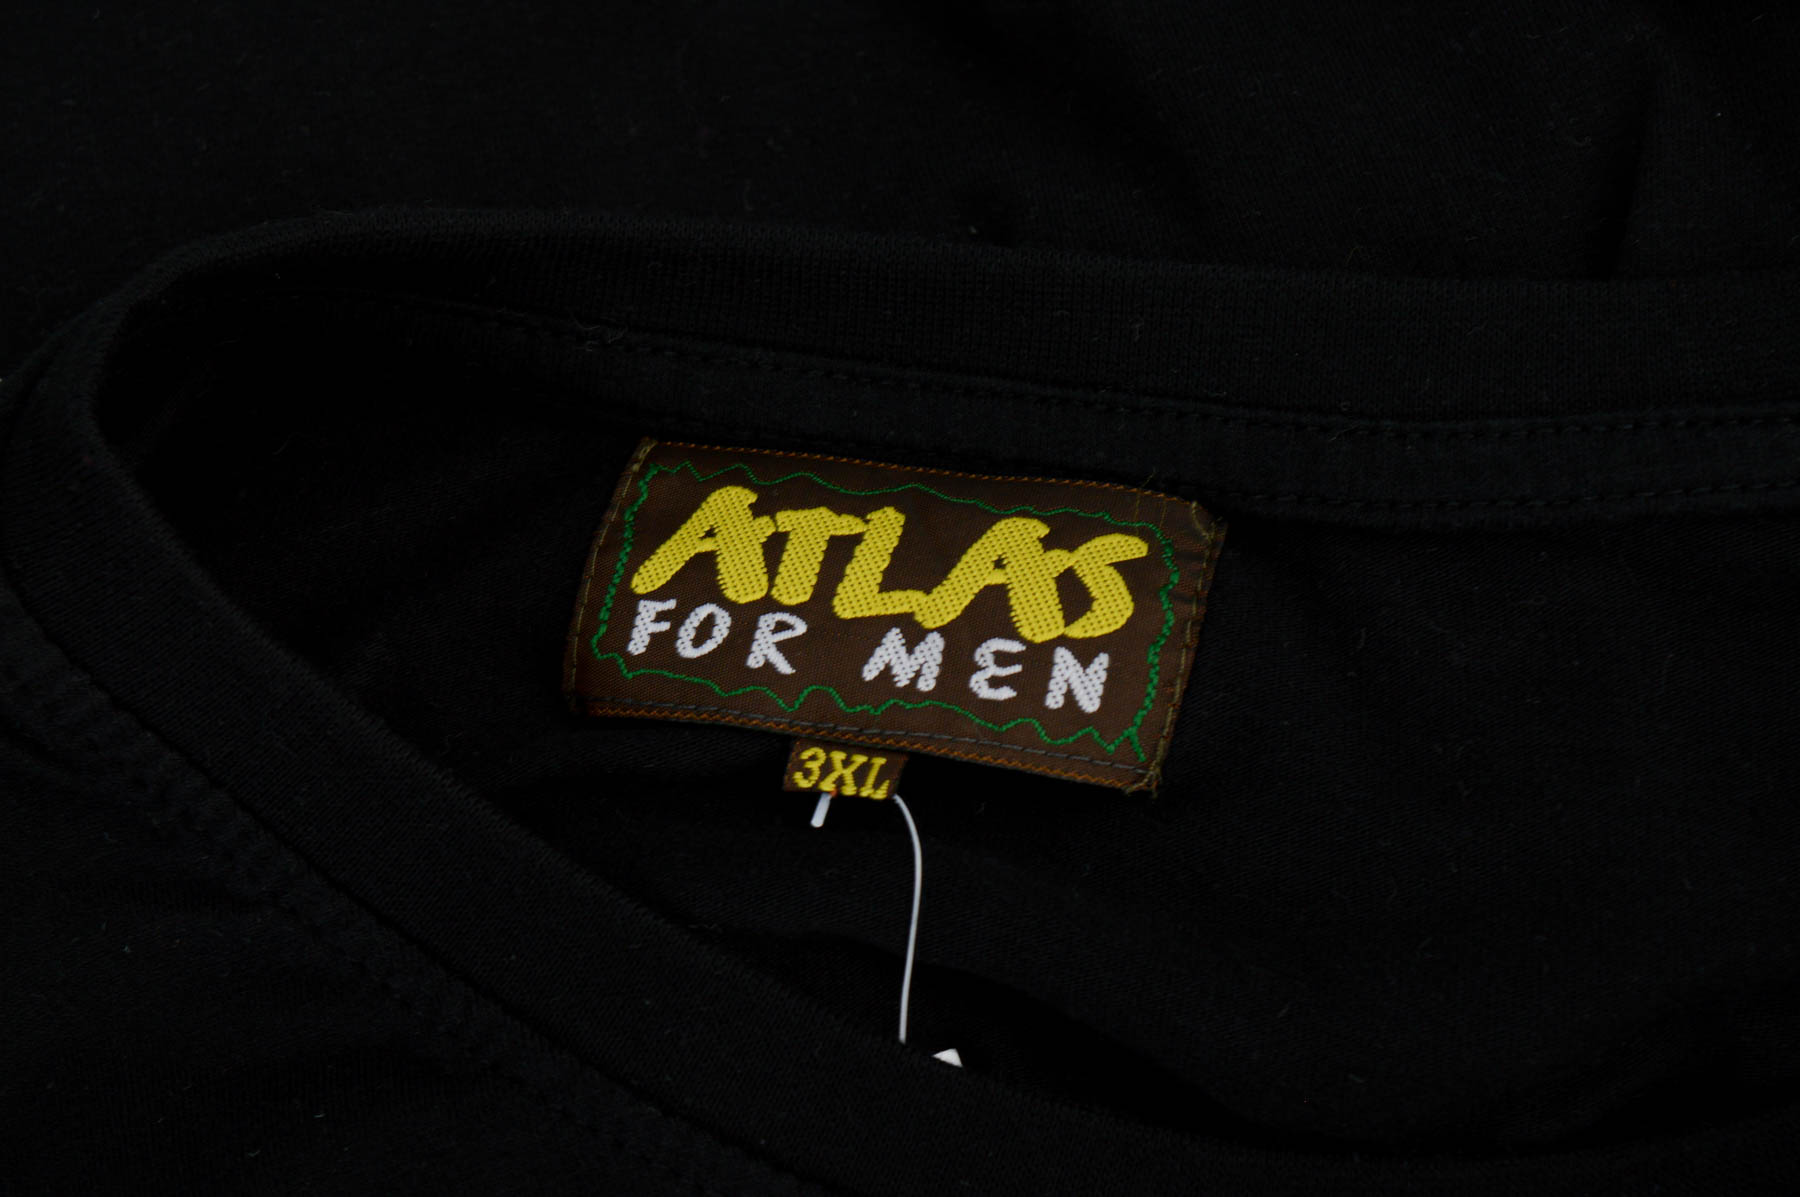 Men's blouse - ATLAS for MEN - 2